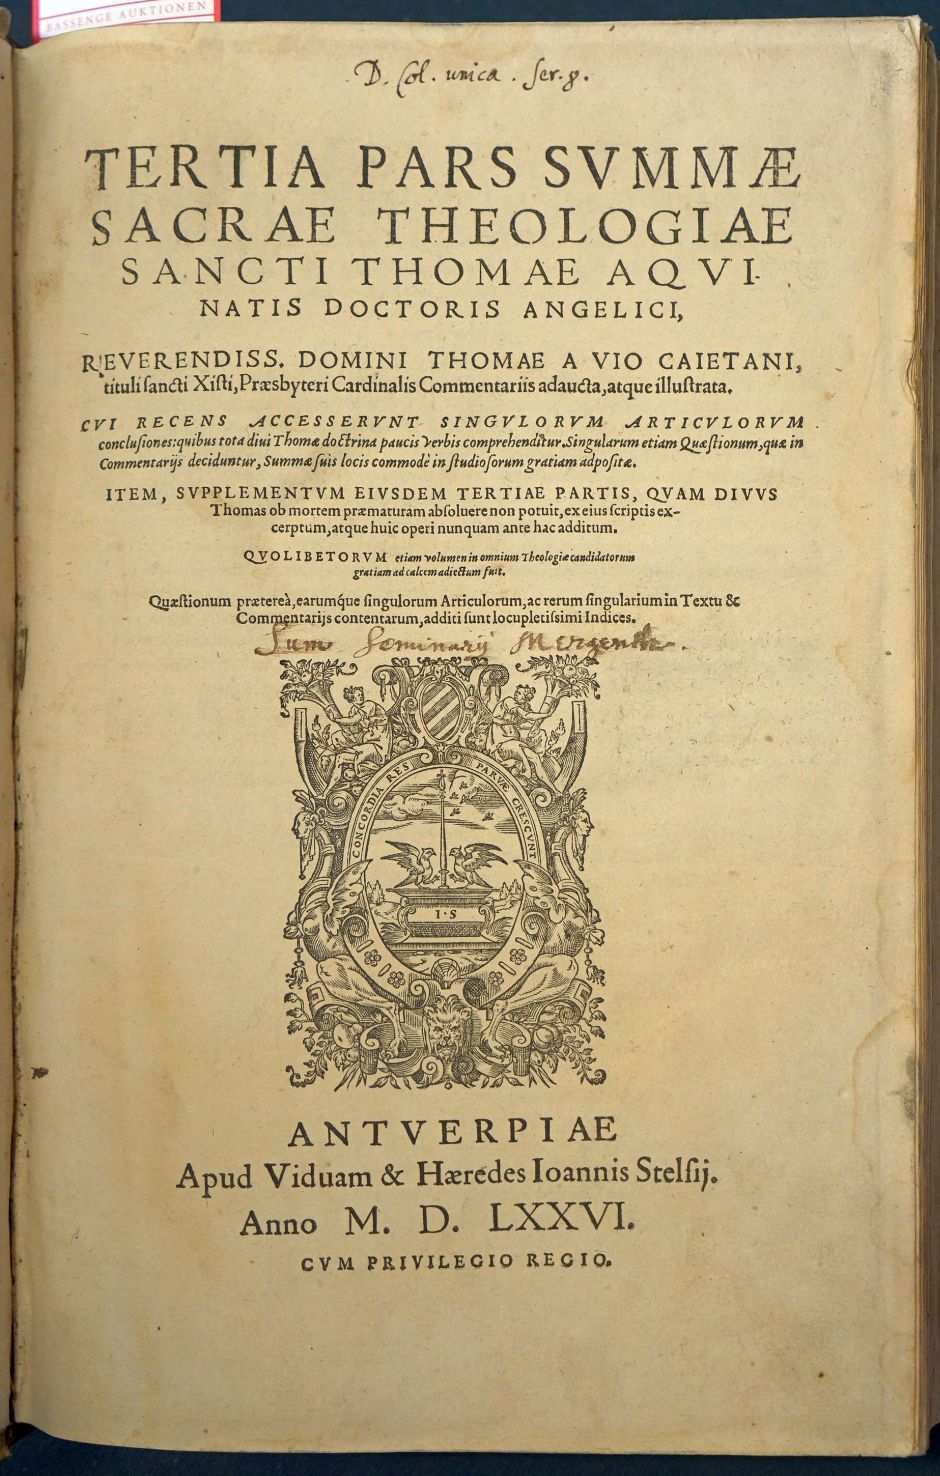 Lot 1205, Auction  115, Thomas von Aquin, Summa sacrae theologiae